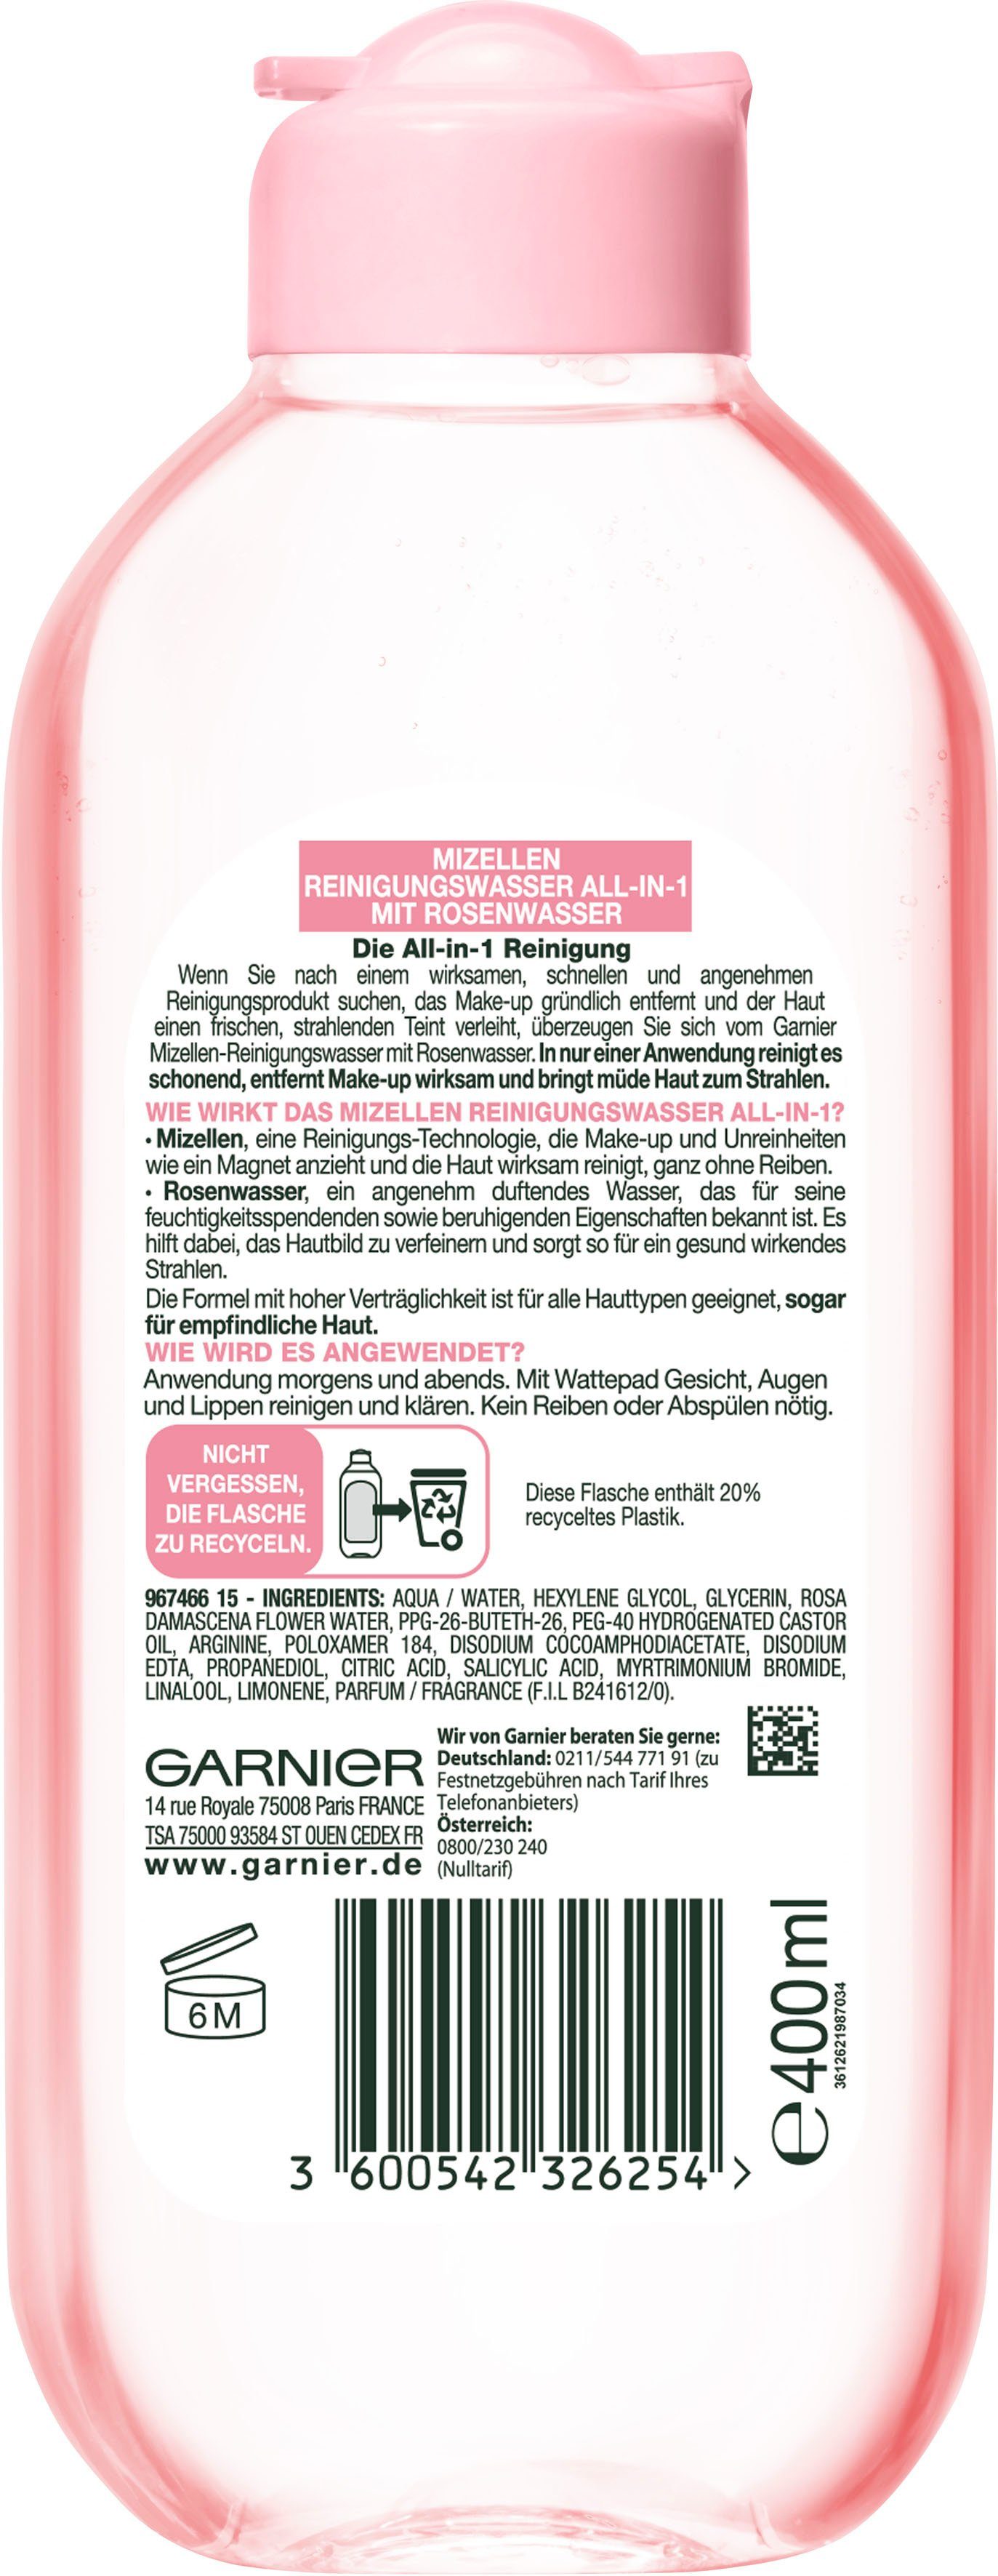 GARNIER Gesichtswasser Mizellen Reinigungswasser Rosenwasser All-in-1, mit